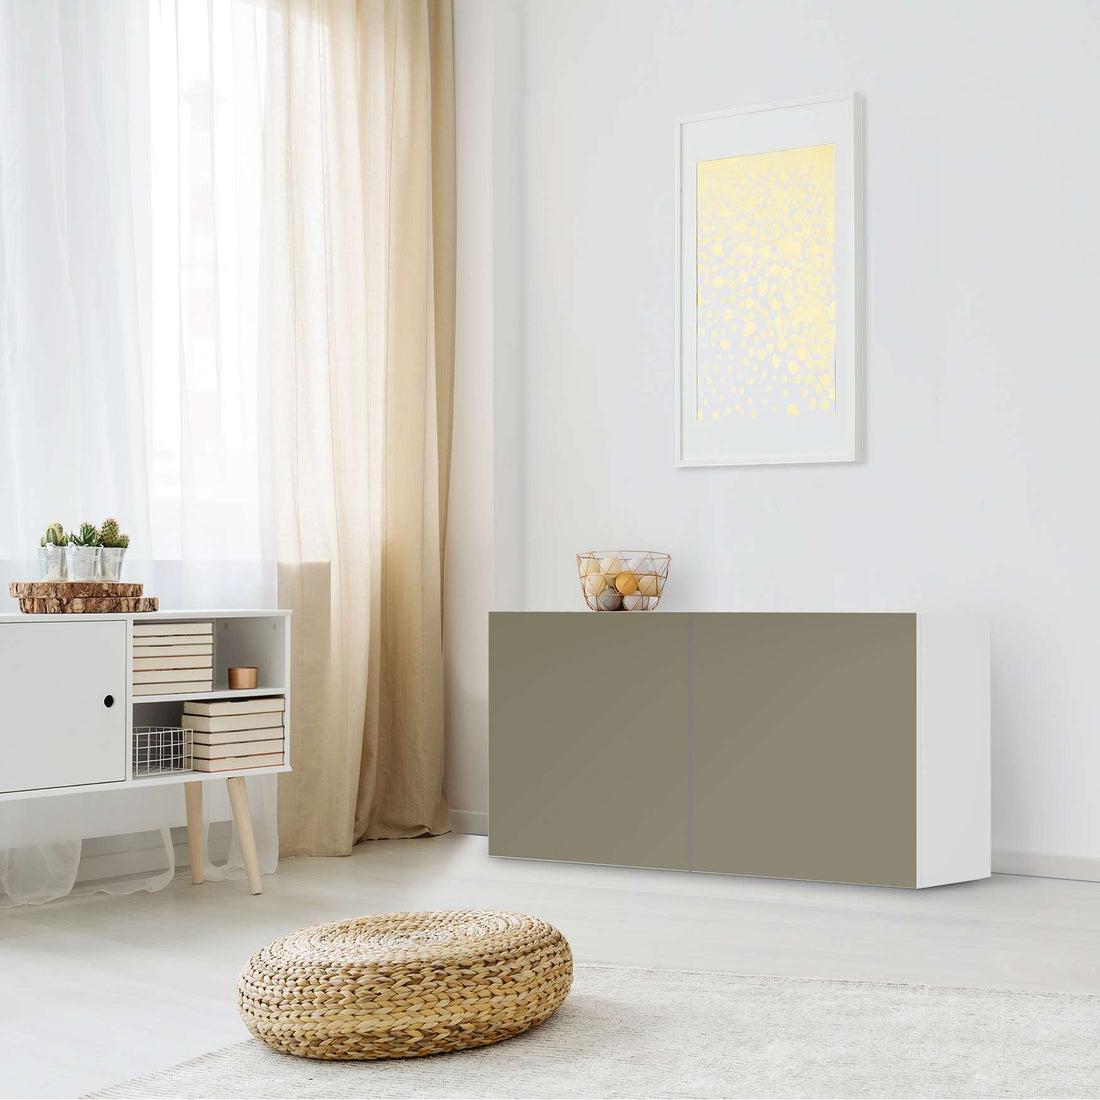 Folie für Möbel Braungrau Light - IKEA Besta Regal Quer 2 Türen - Wohnzimmer